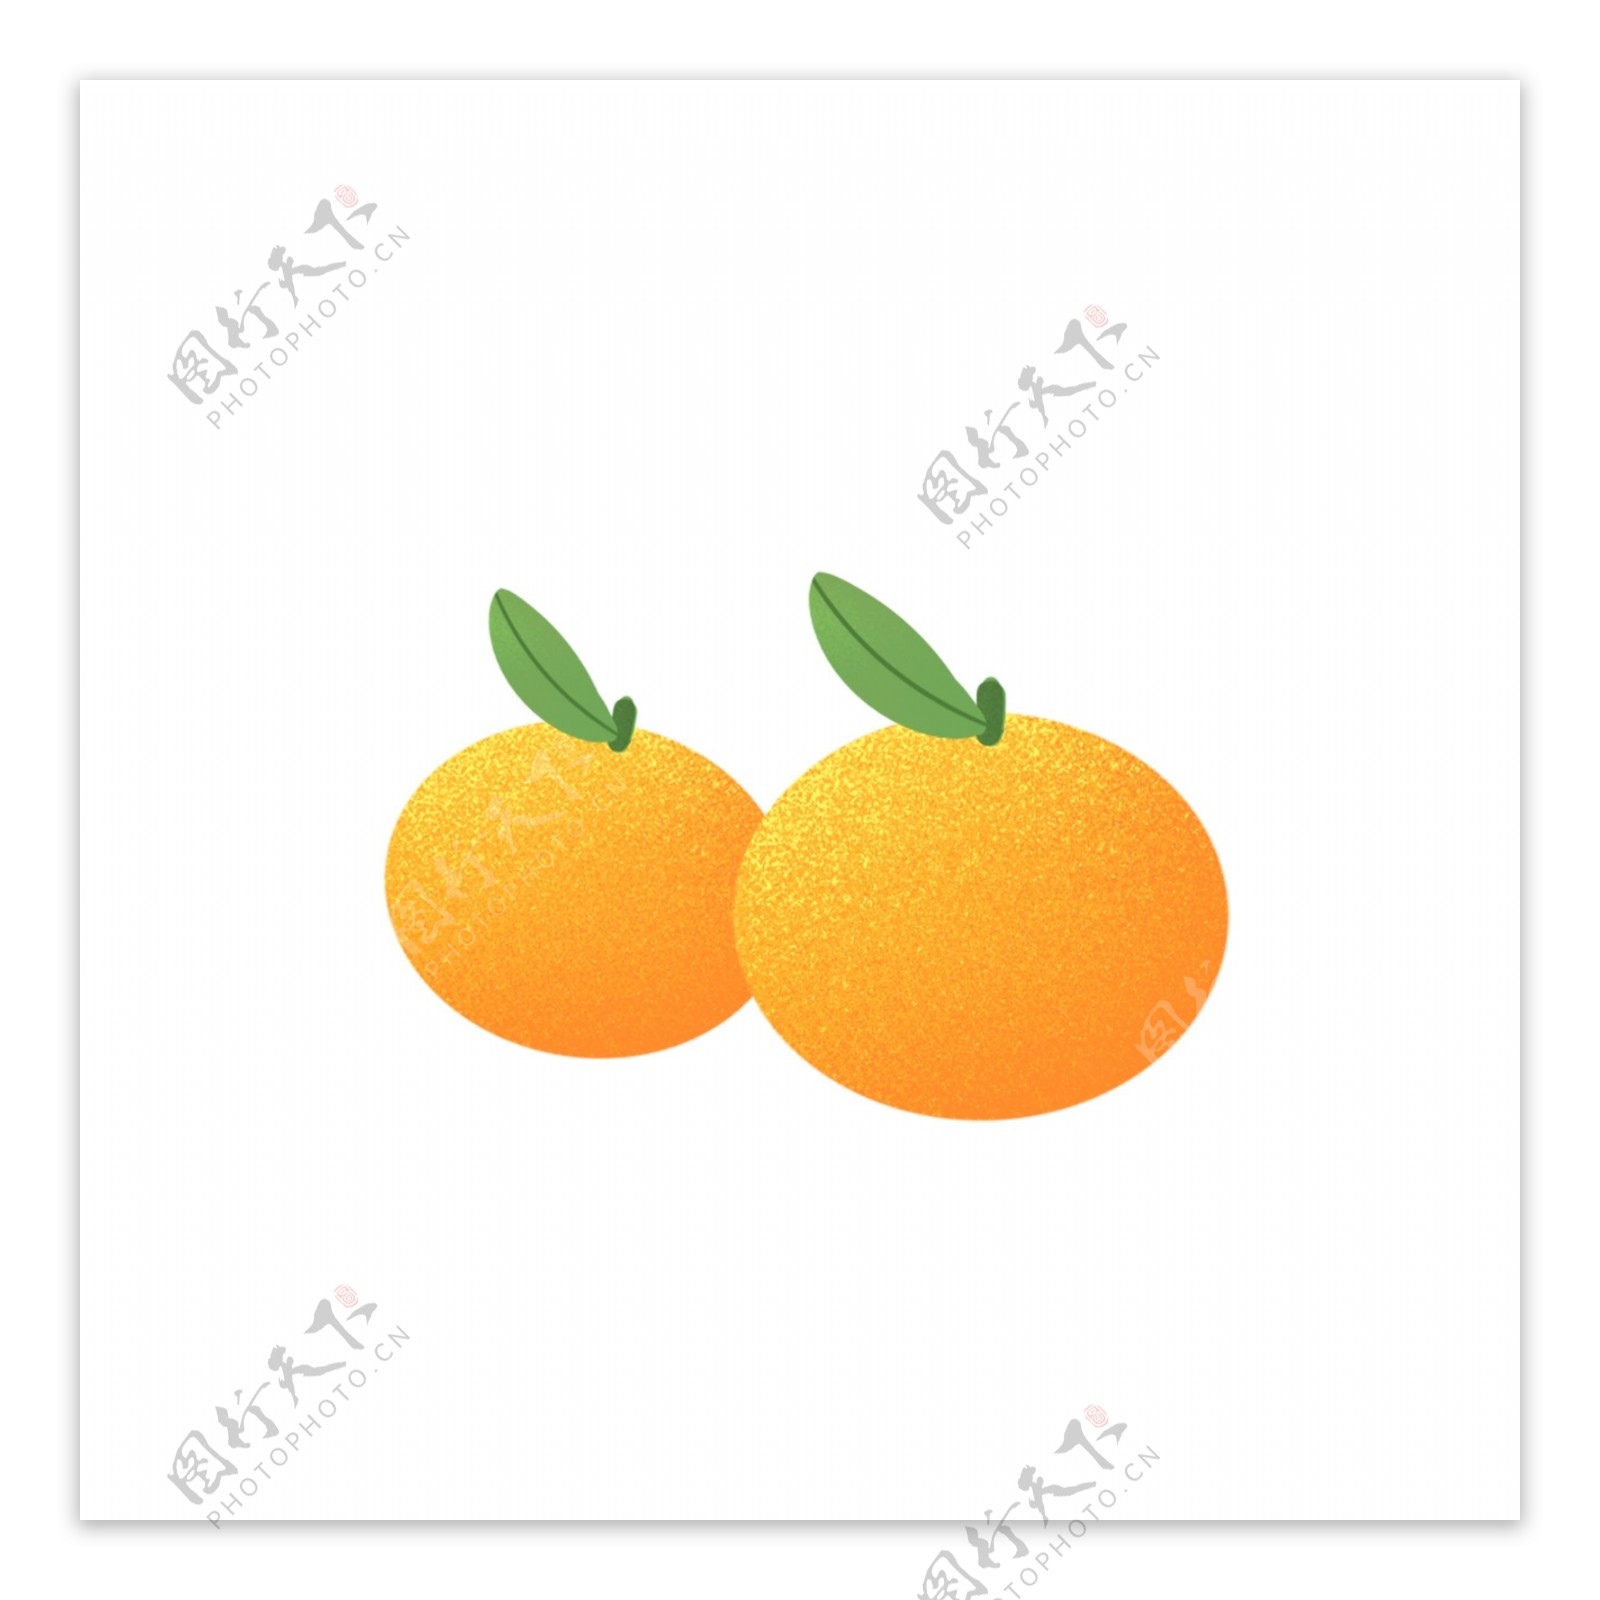 2个橙子图案元素